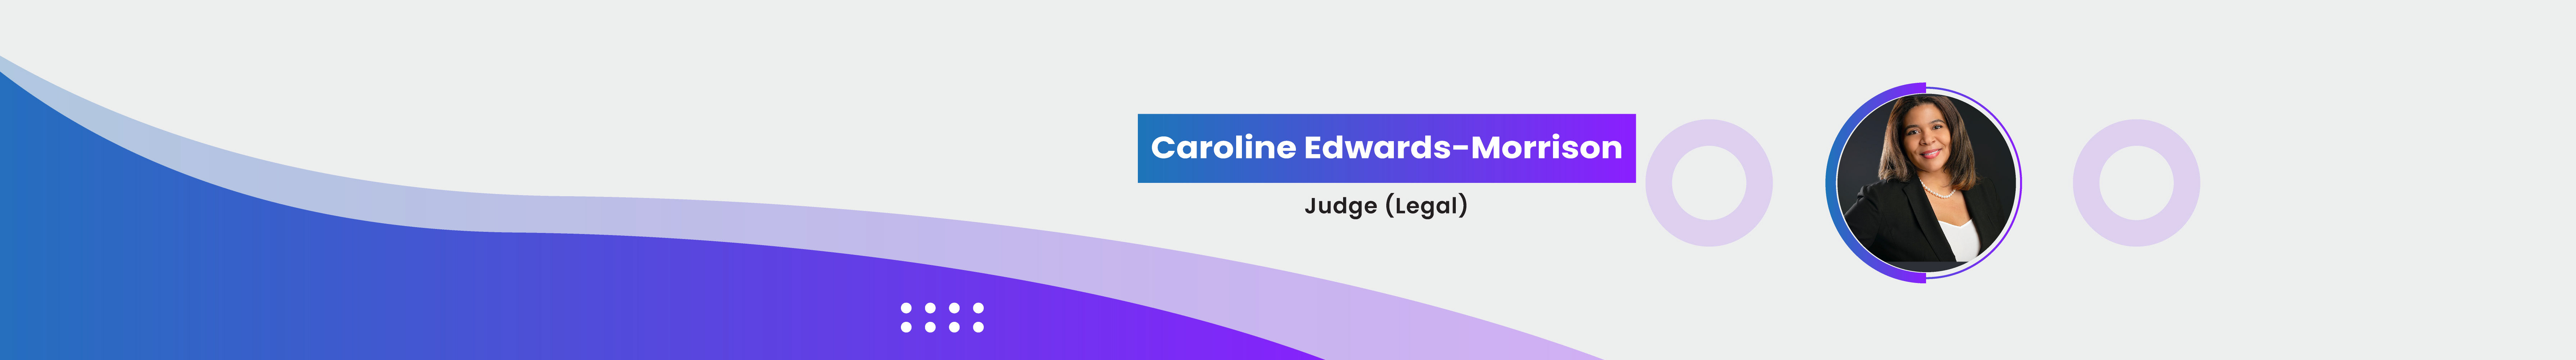 Caroline Edwards-Morrison's profile banner